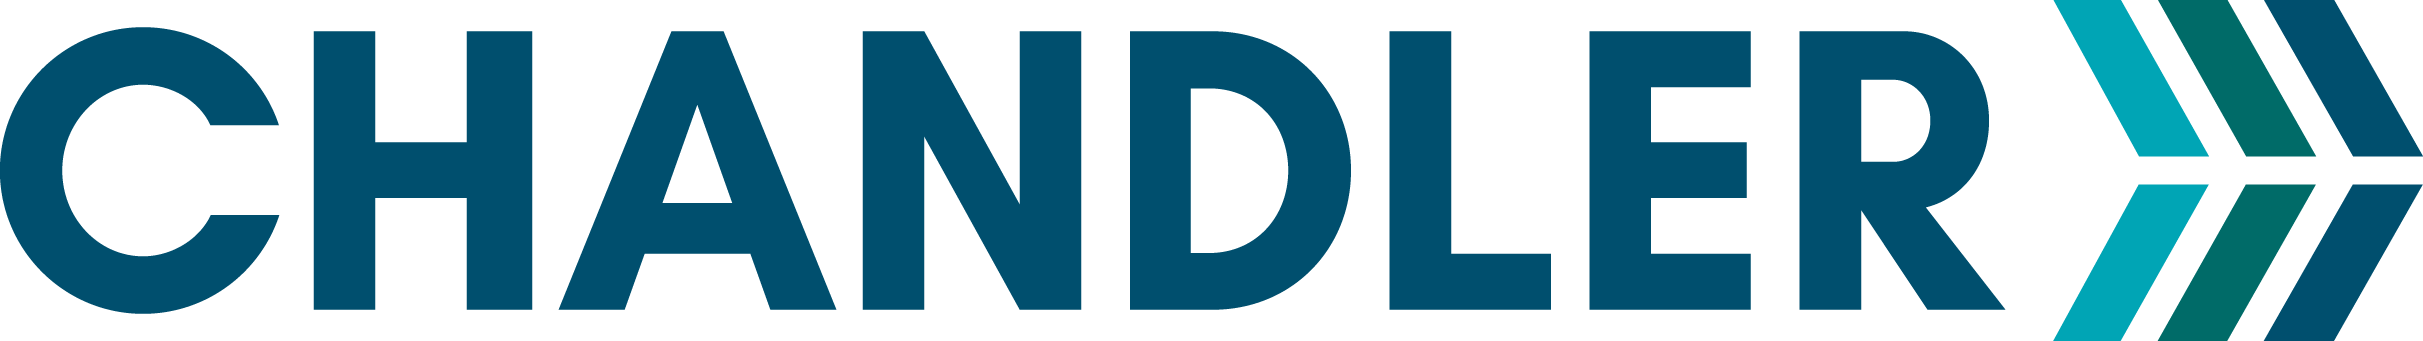 Chandler_Logo-adjusted